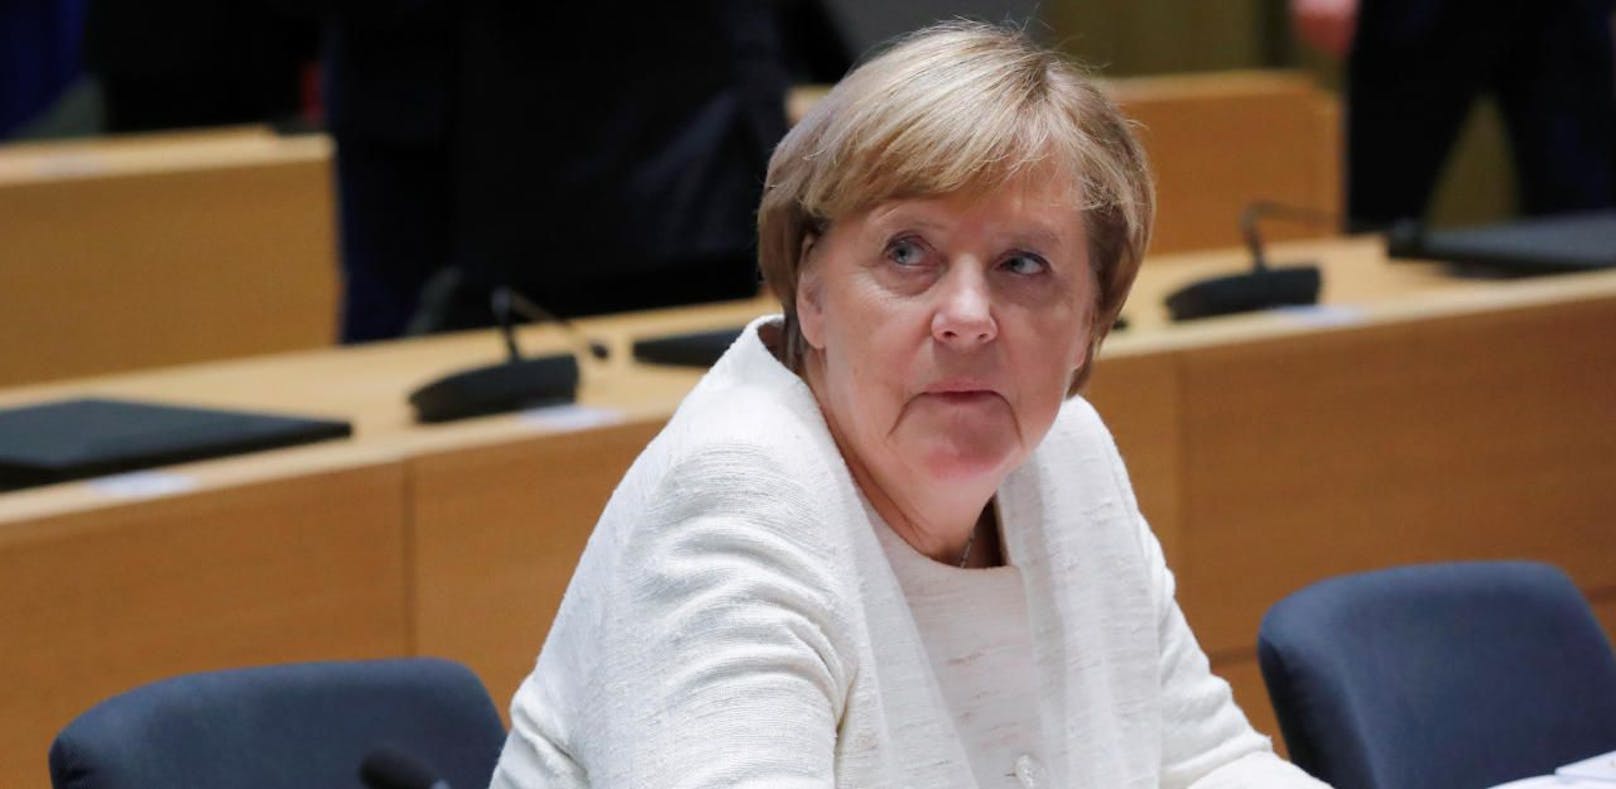 Auch Kanzlerin Angela Merkel ist von dem Angriff betroffen.